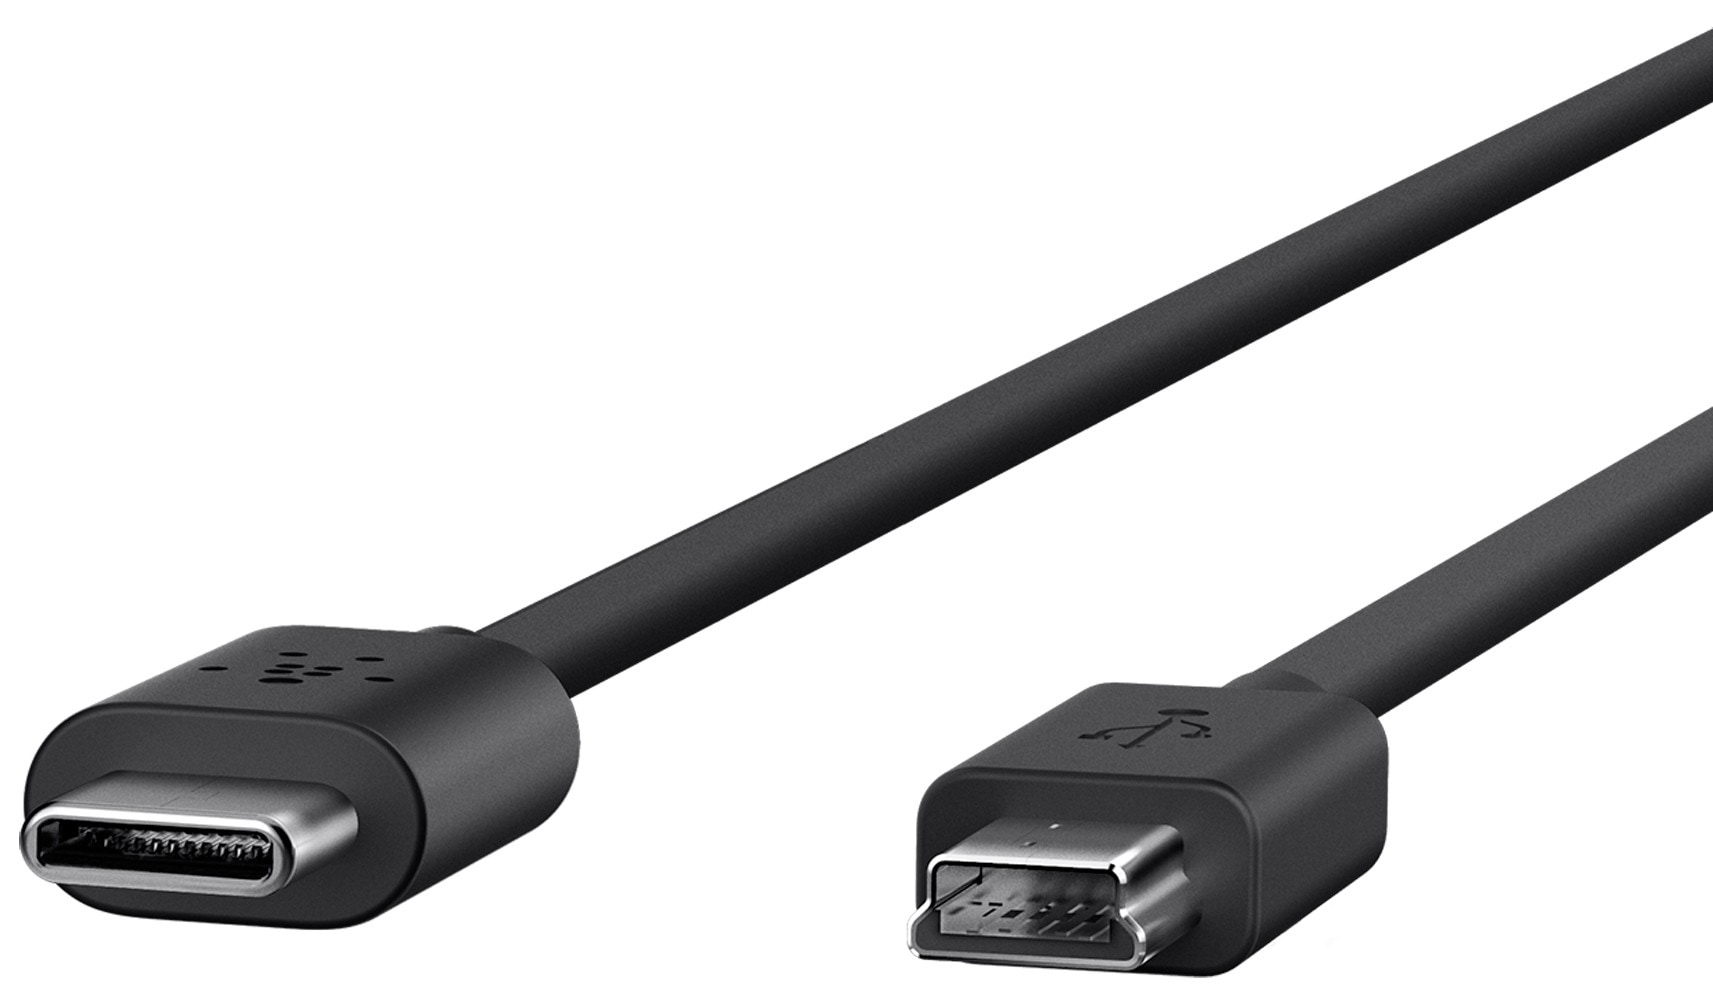 Belkin USB kabel USB-C till Mini USB 2 m (svart) - Kablar ...